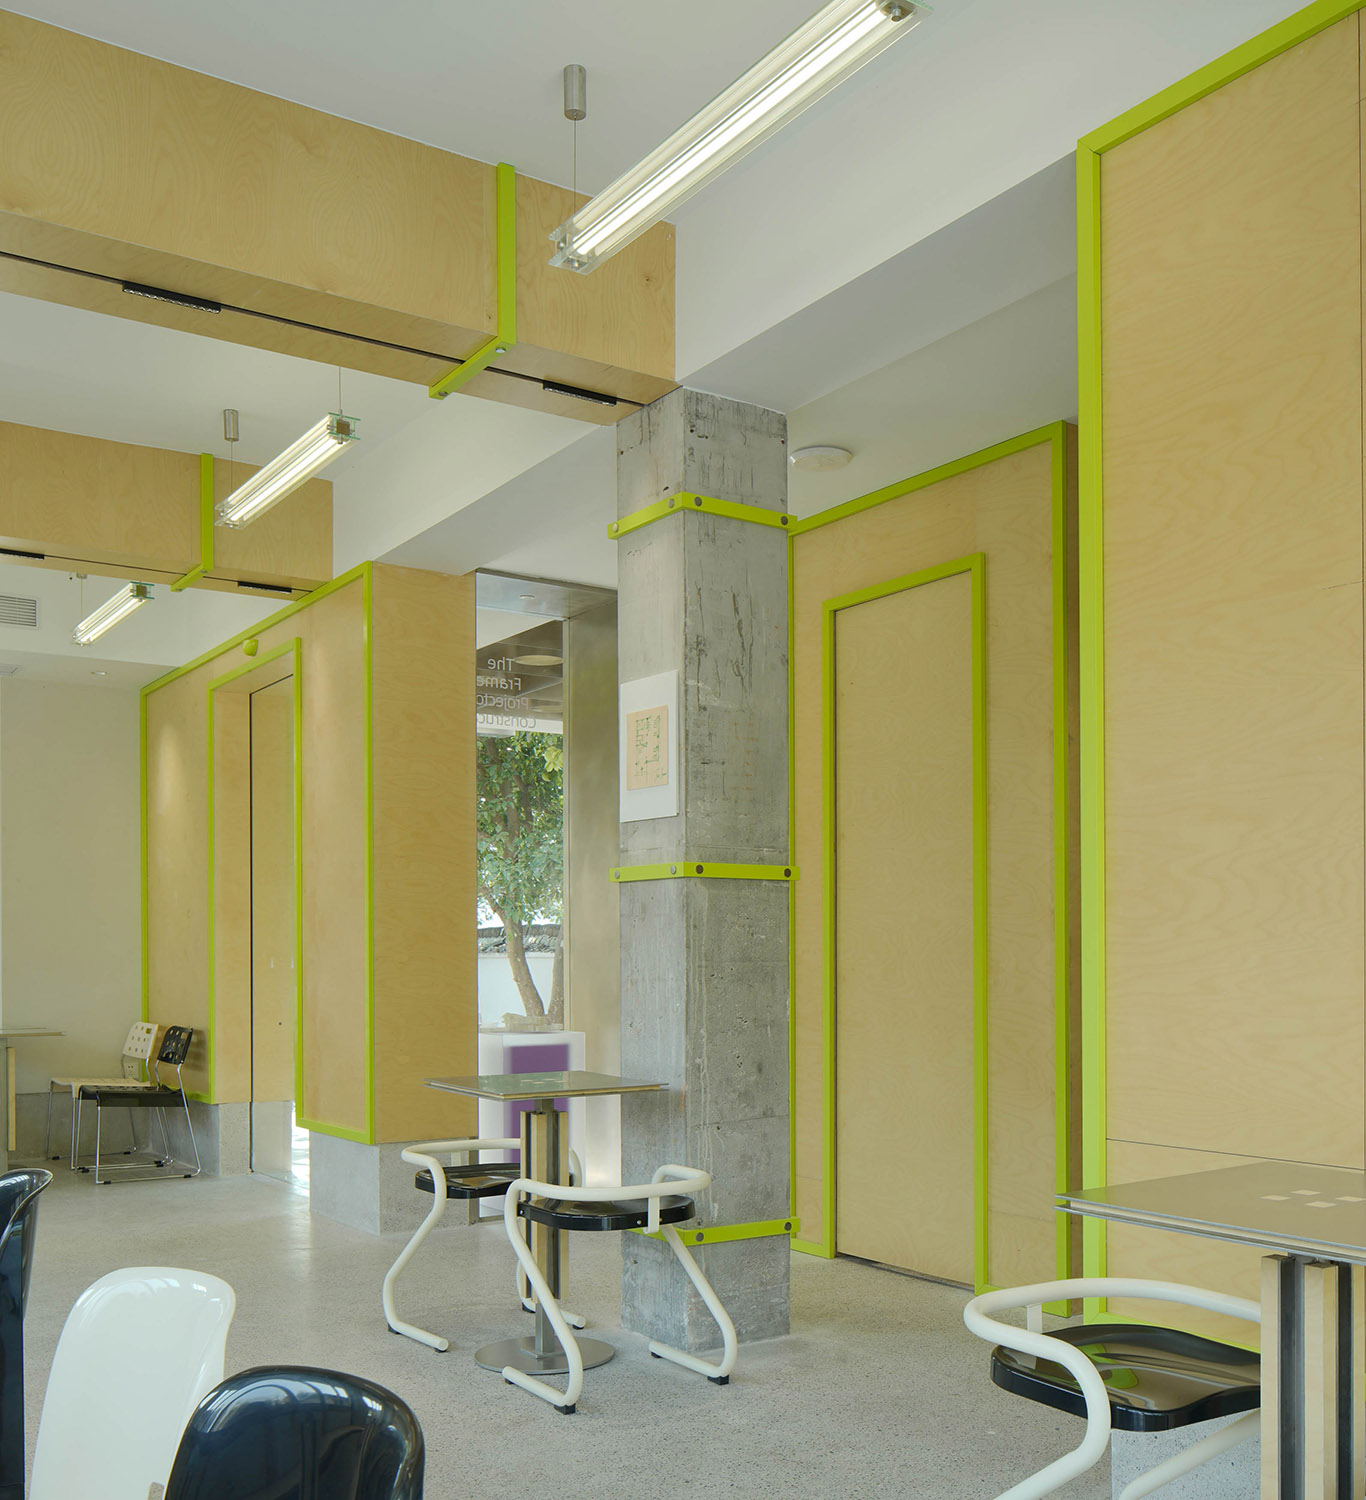 咖啡厅设计,咖啡厅设计案例,THE FRAME,JESSY HEBER,三橙立禾办公室,空间改造,办公室设计,杭州,三橙立禾空间设计